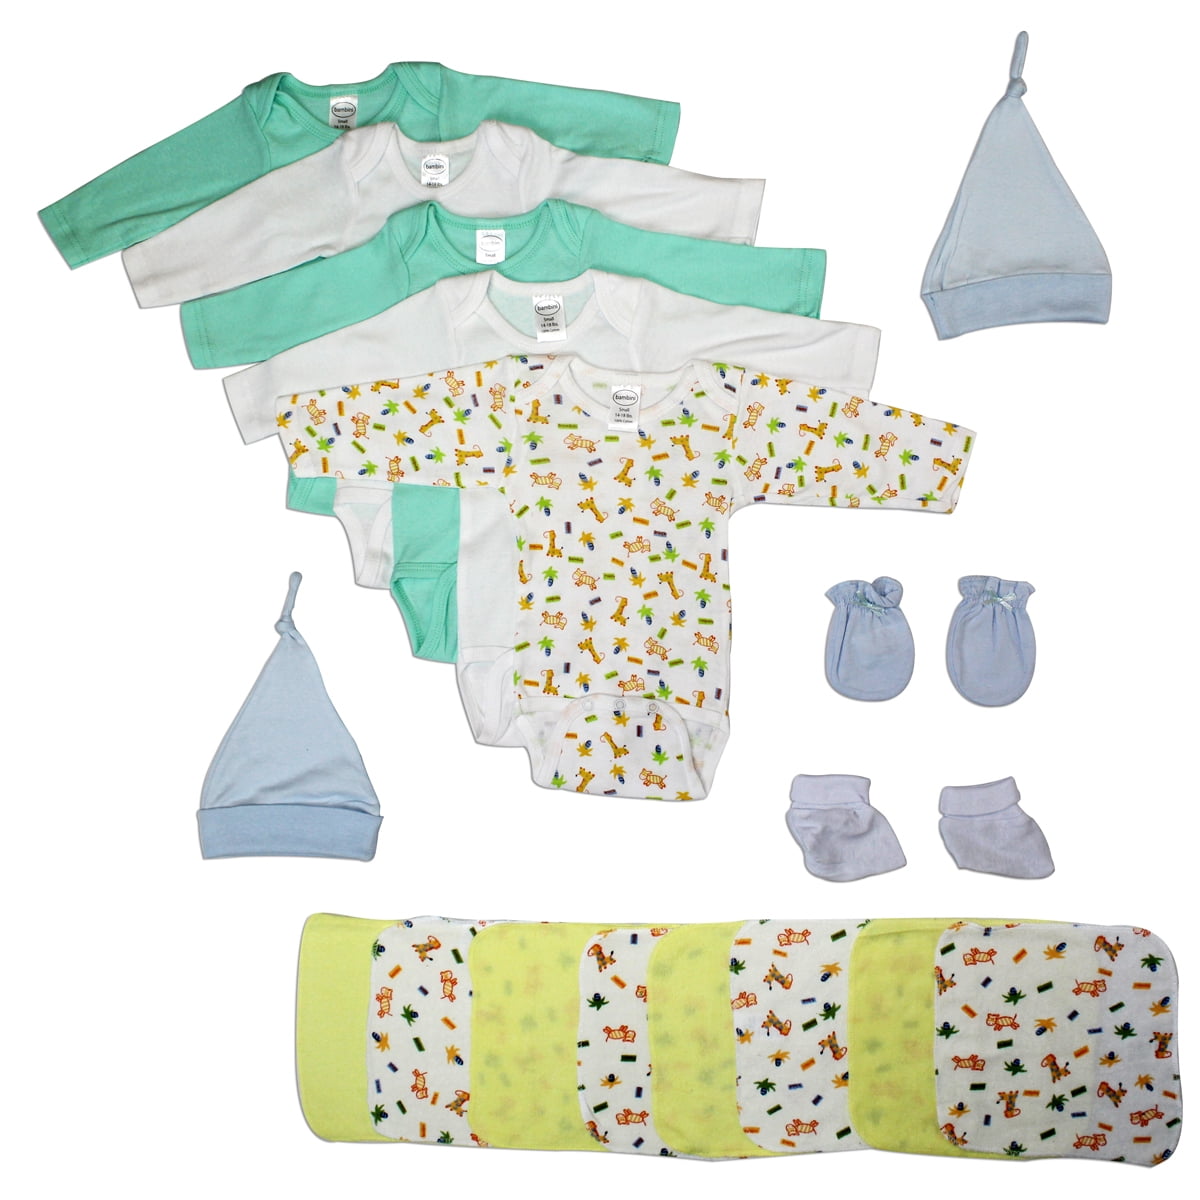 Bambini Newborn Baby Boys 21 Pc Layette Baby Shower Gift Set - Walmart.com